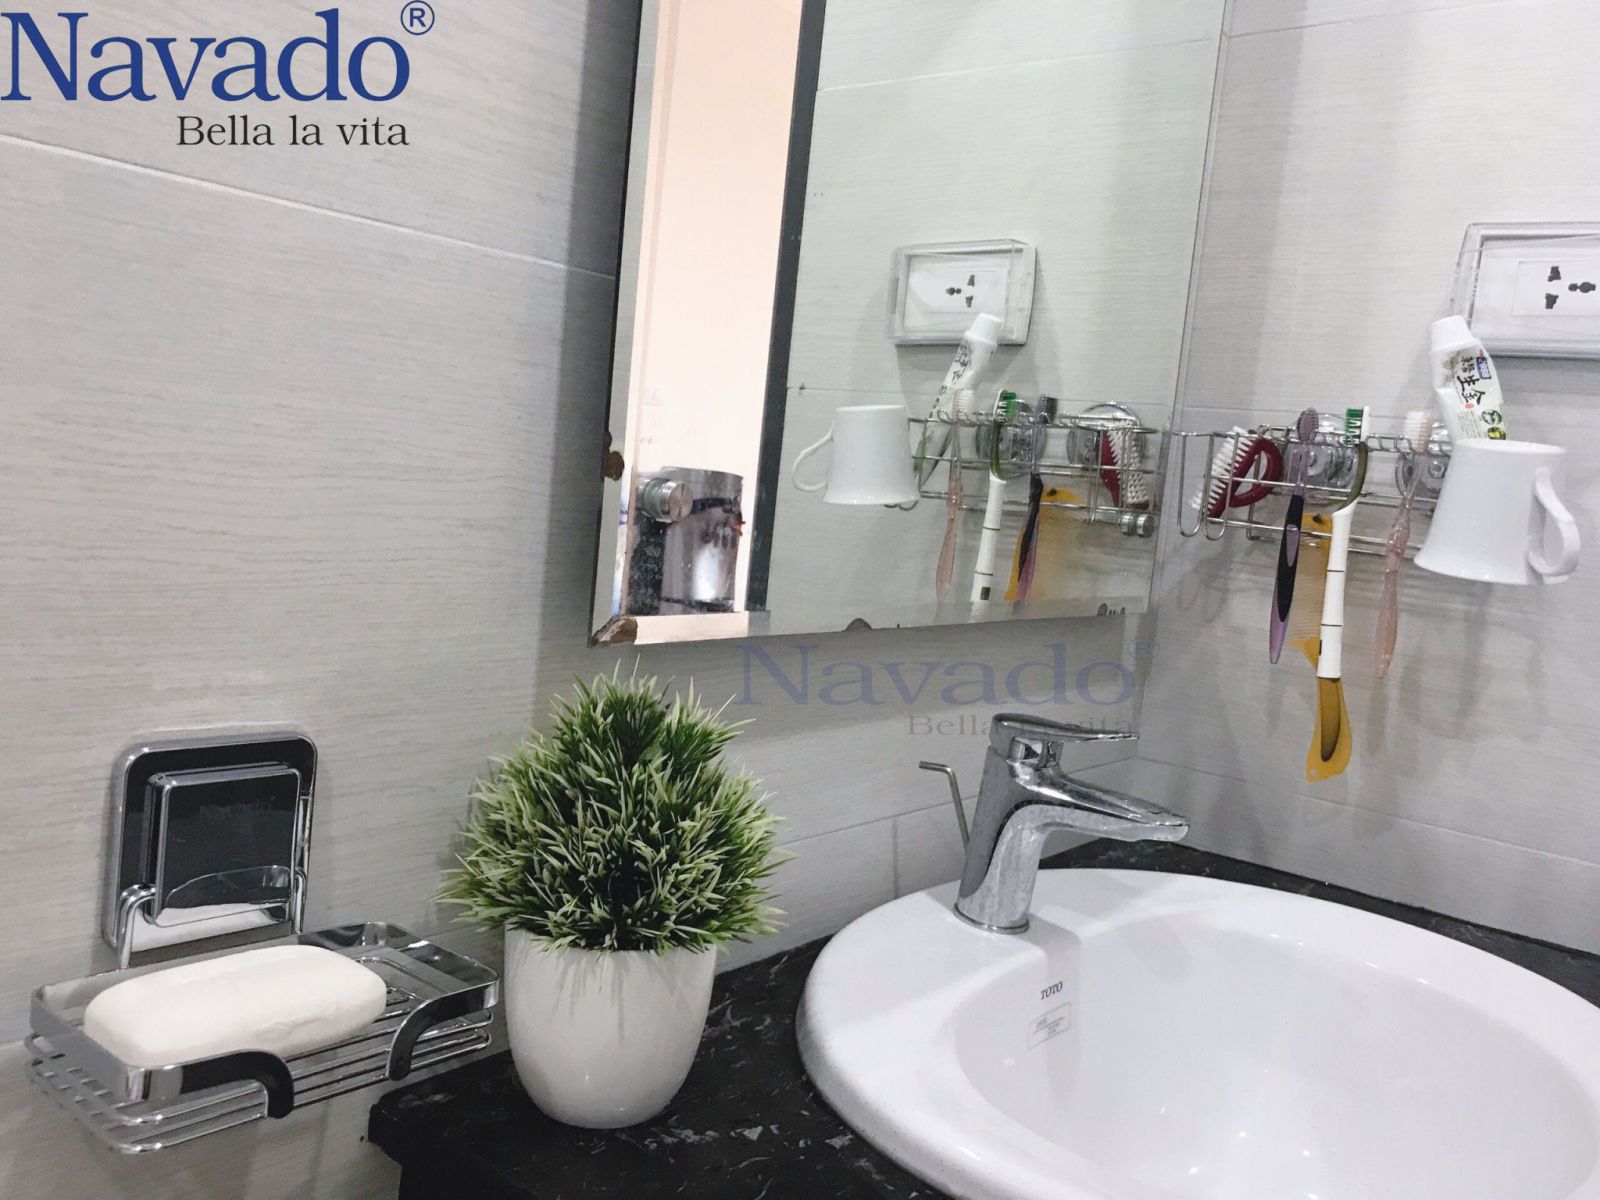  Phụ kiện phòng tắm Navado cho gia đình bạn